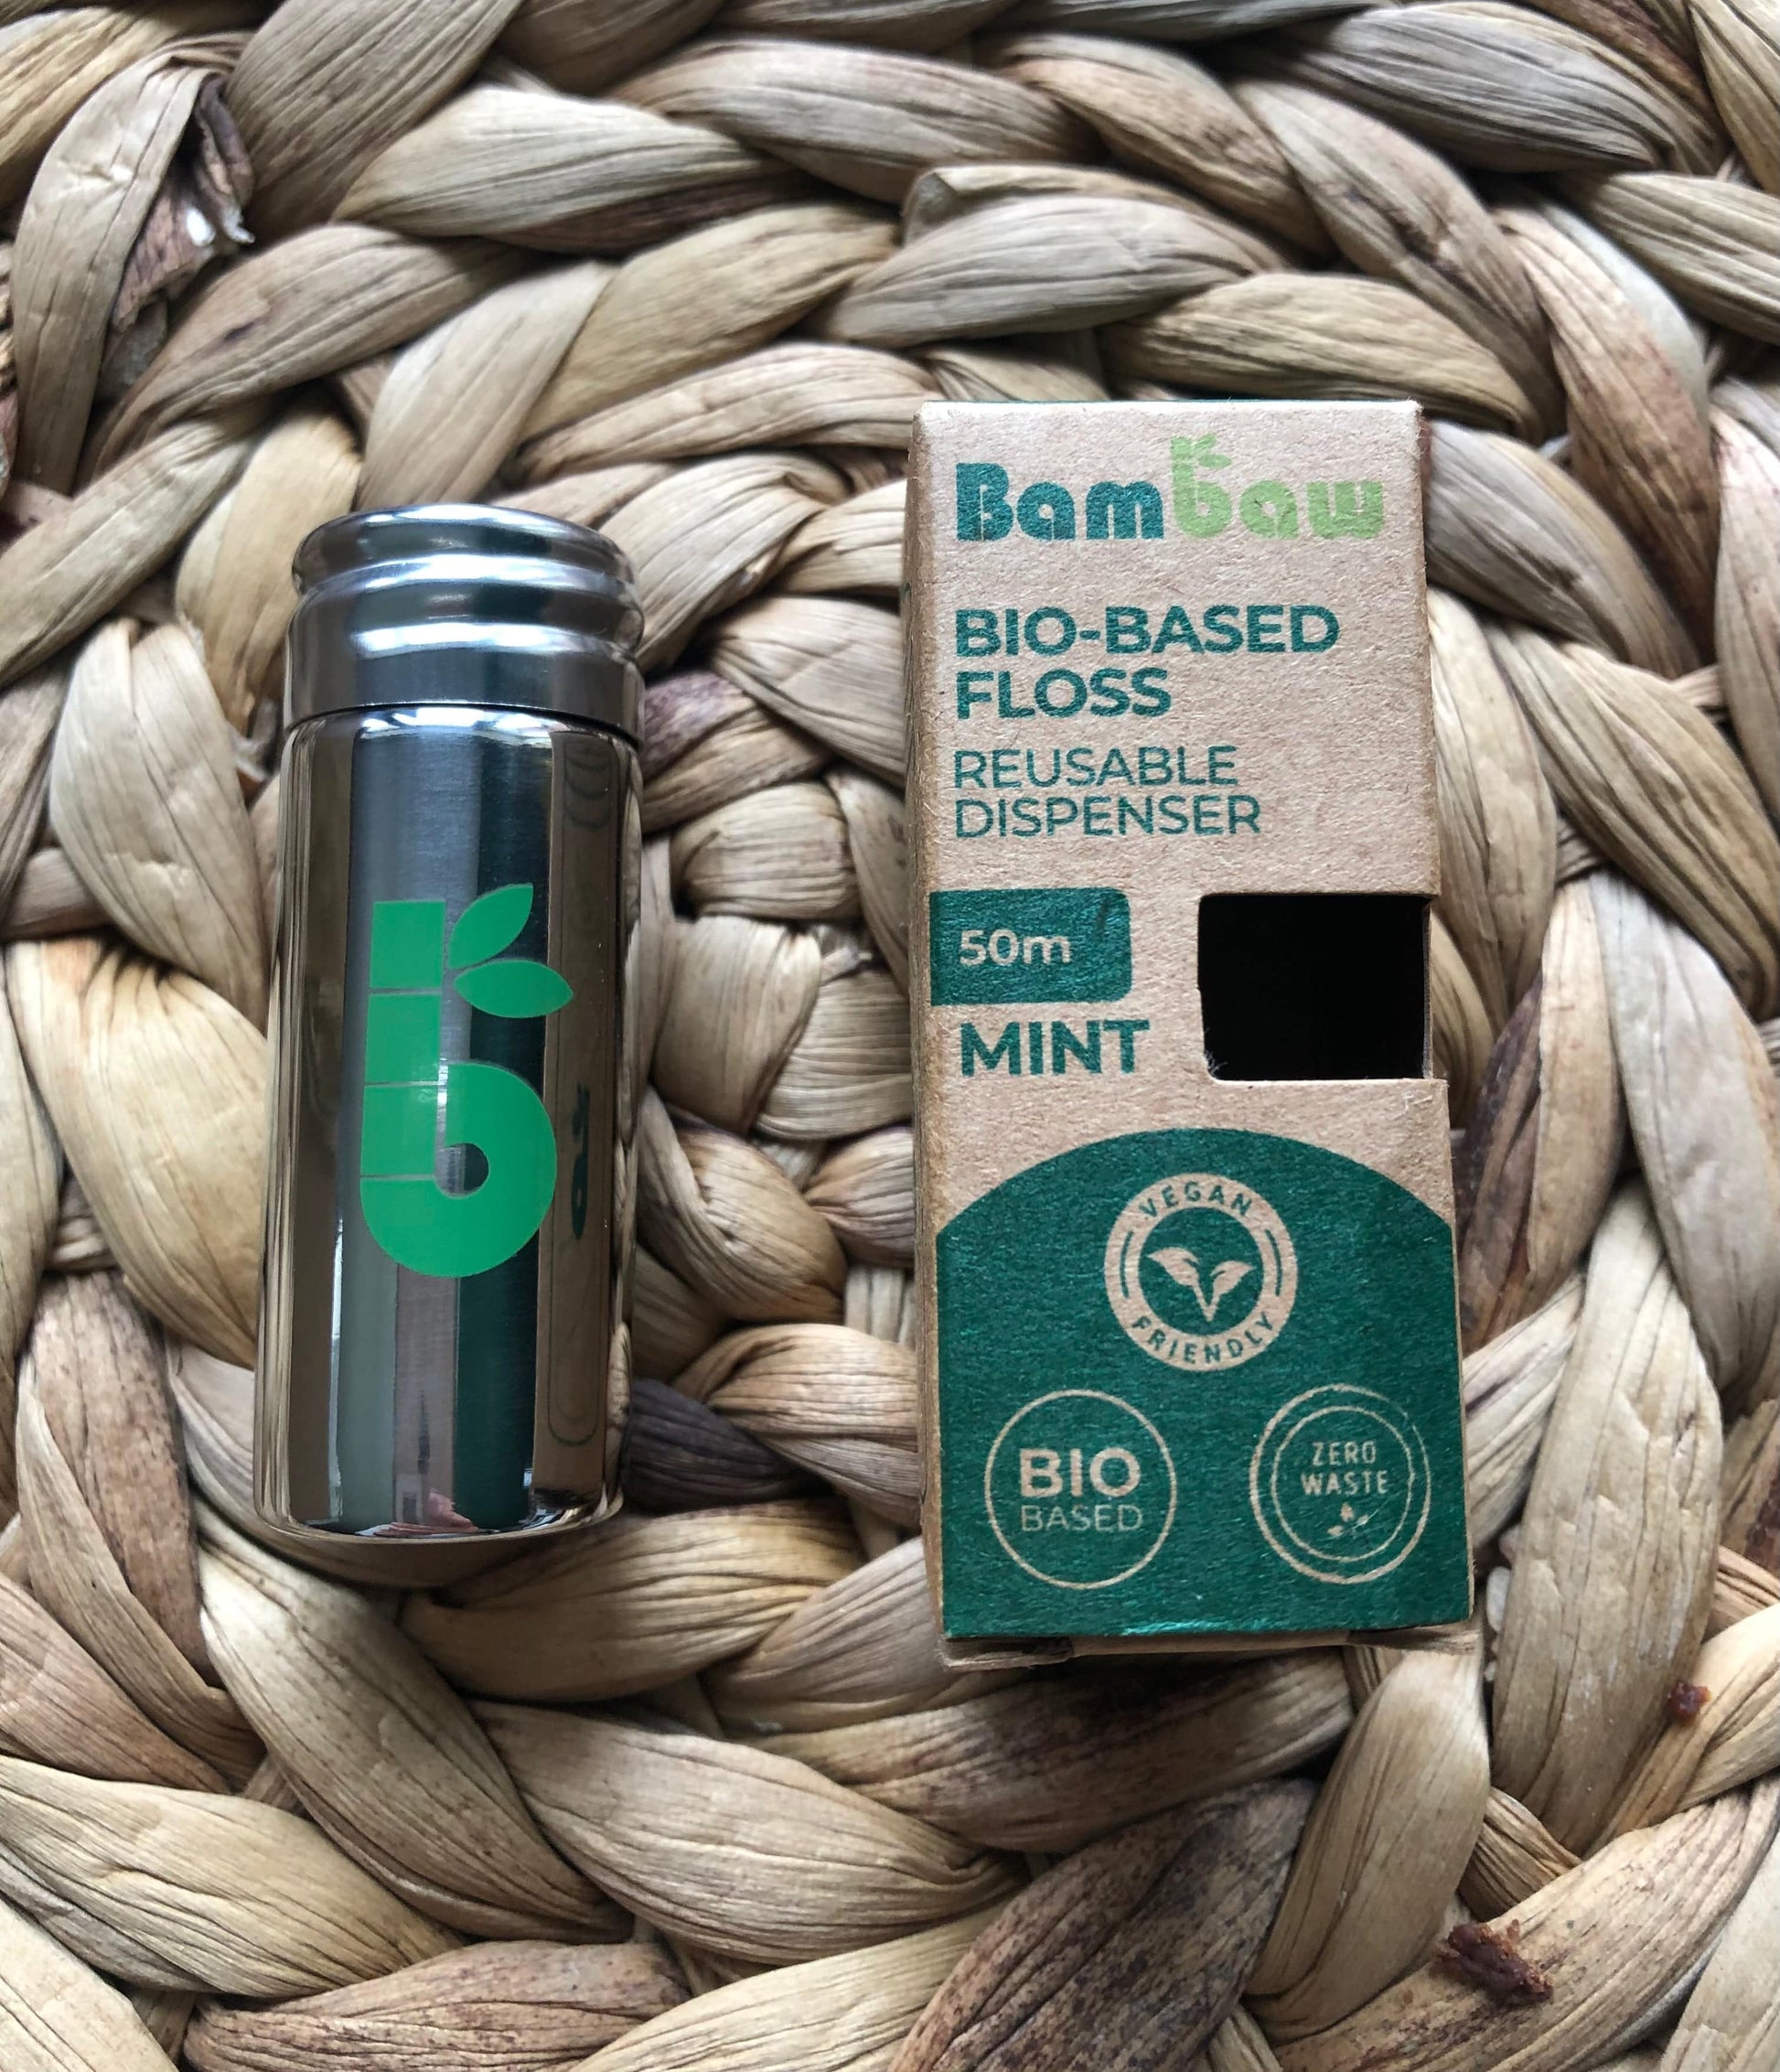 Bambaw Floss & dispenser Bambaw Vegan Bio-based Floss in reusable metal dispenser